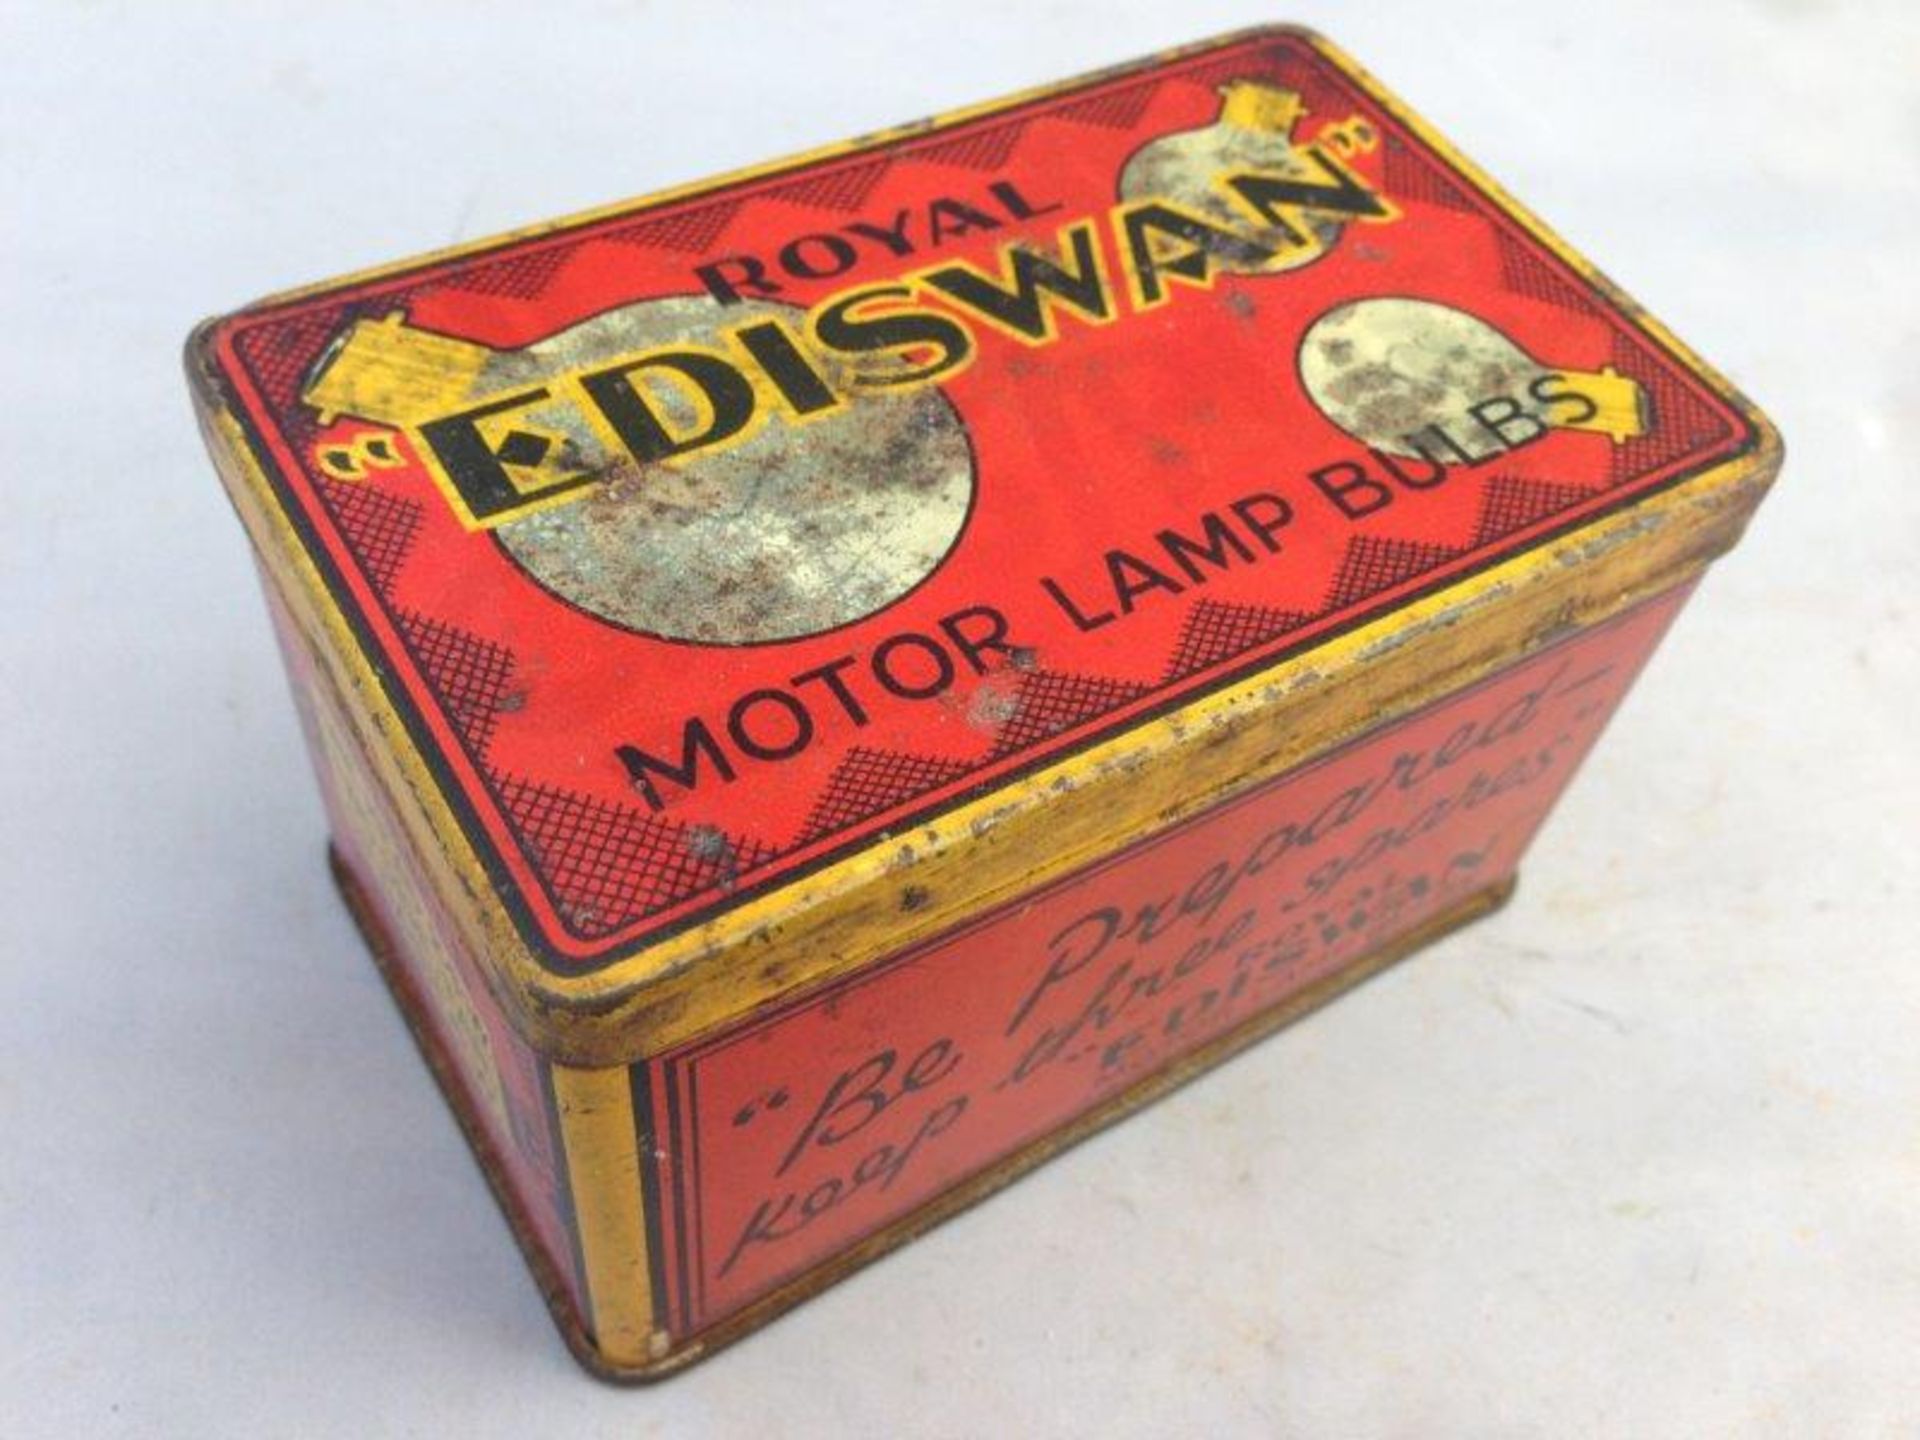 An Ediswan Motor Lamp Bulbs rectangular tin.